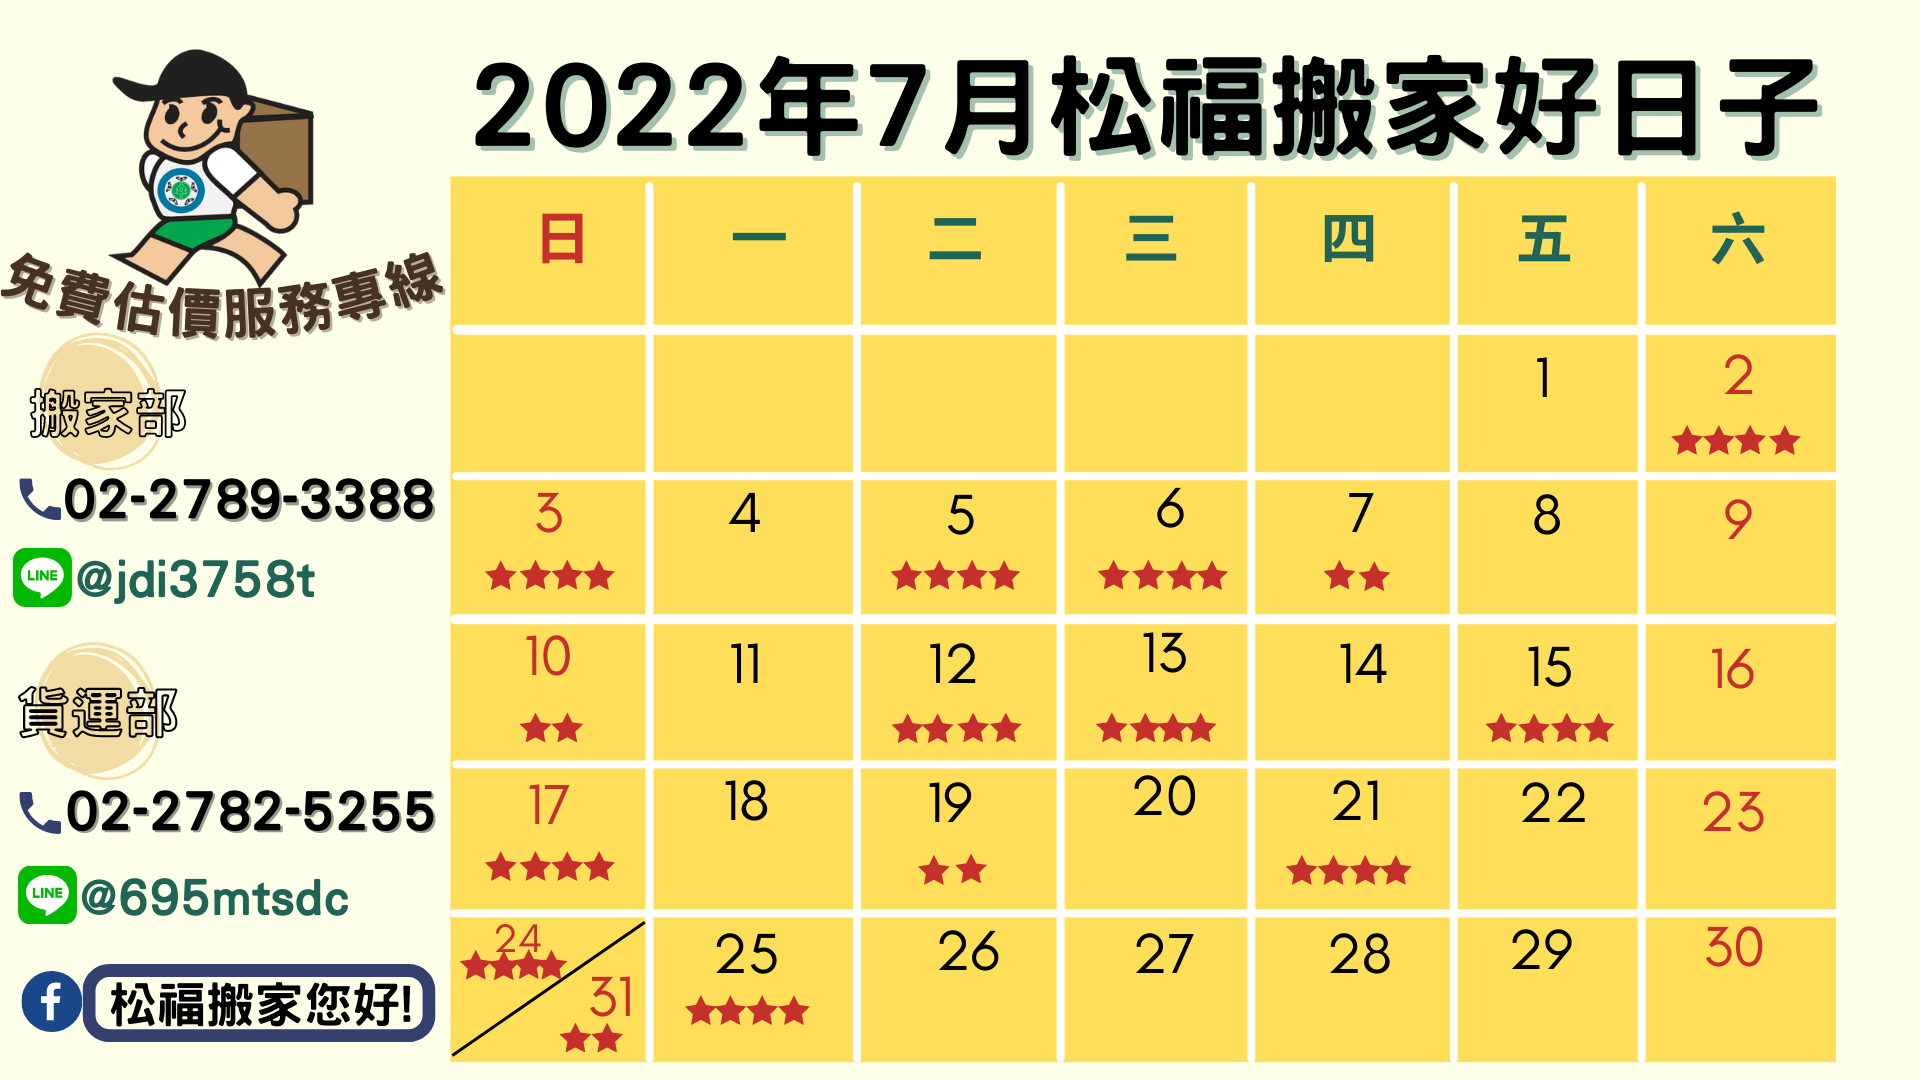 『2022年7月搬家好日子』請找松福搬家您好!推薦台北搬家、公司搬遷、精緻搬家、免動手打包、搬家公司推薦首選!